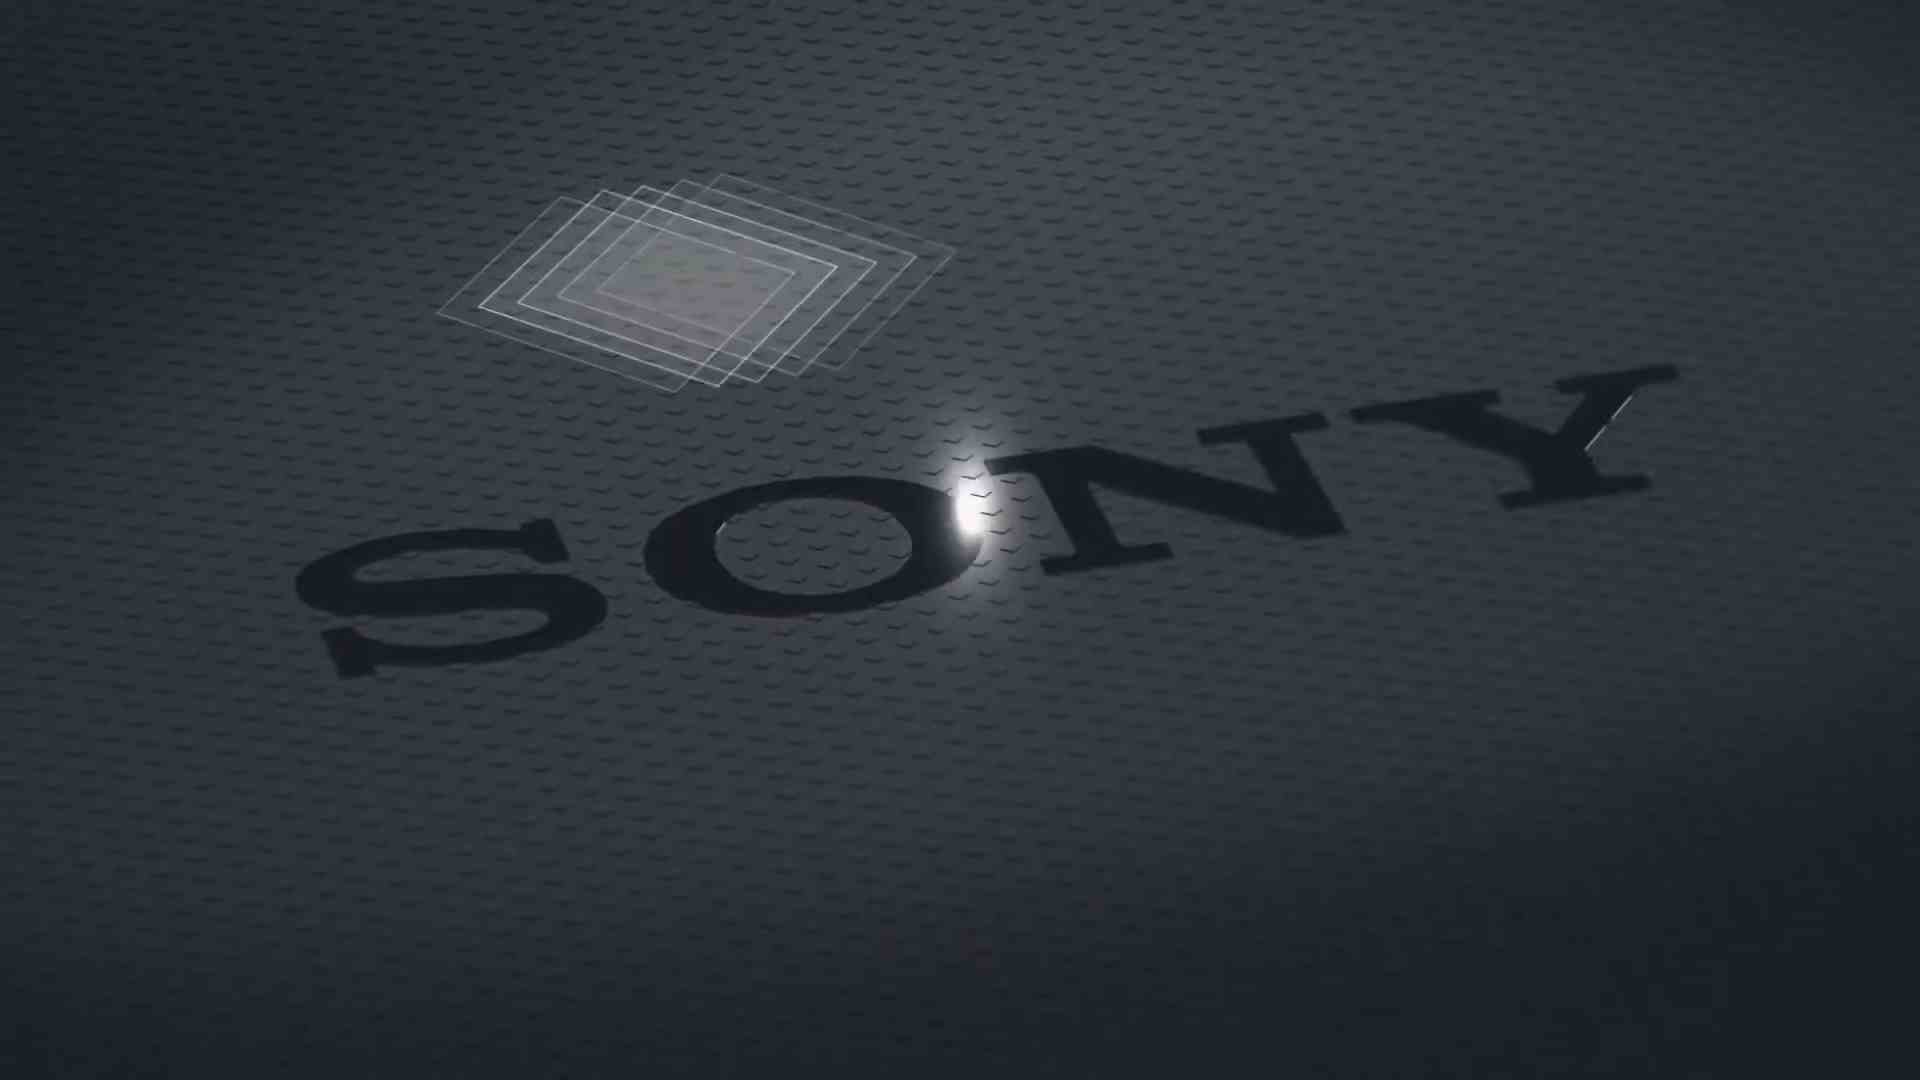 Sony Xperia 1 VI, TV benzeri ekranı ve 7,1x optik yakınlaştırmasıyla resmi olarak karşımıza çıkıyor